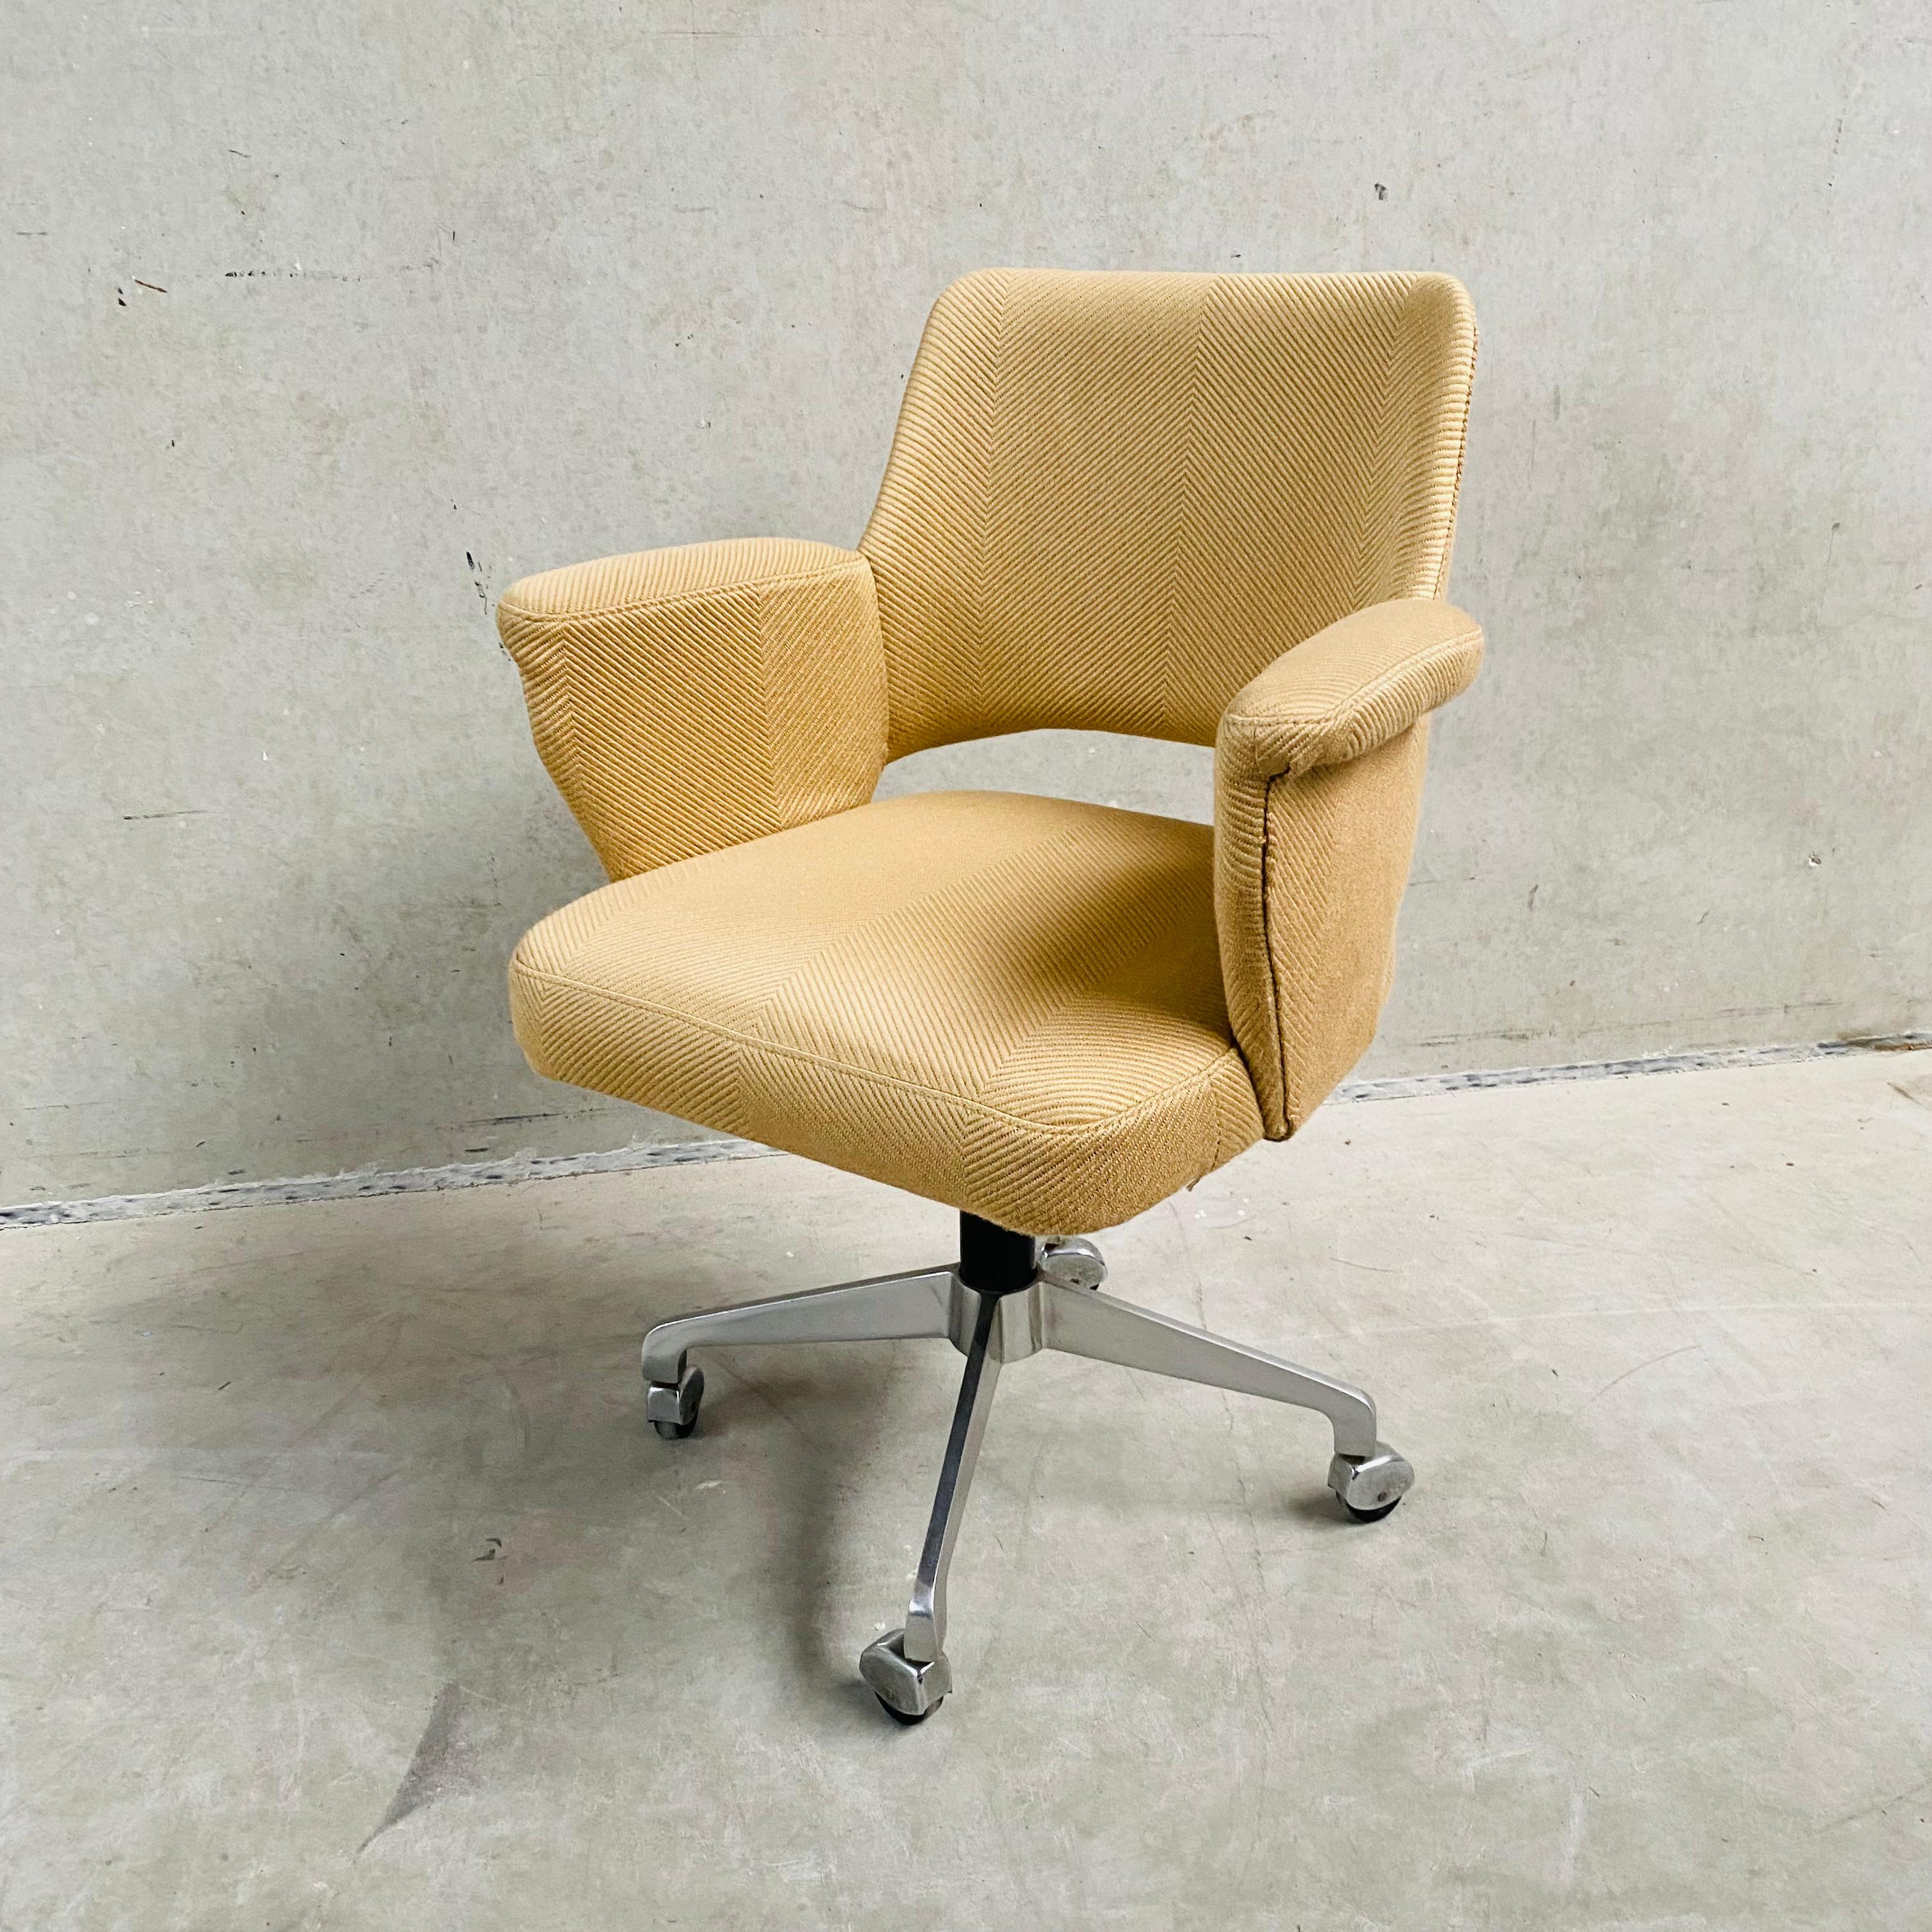 Mid-Century Modern AP Originals Swiffle Desk Chair by Hein Salomonson 1960 For Sale